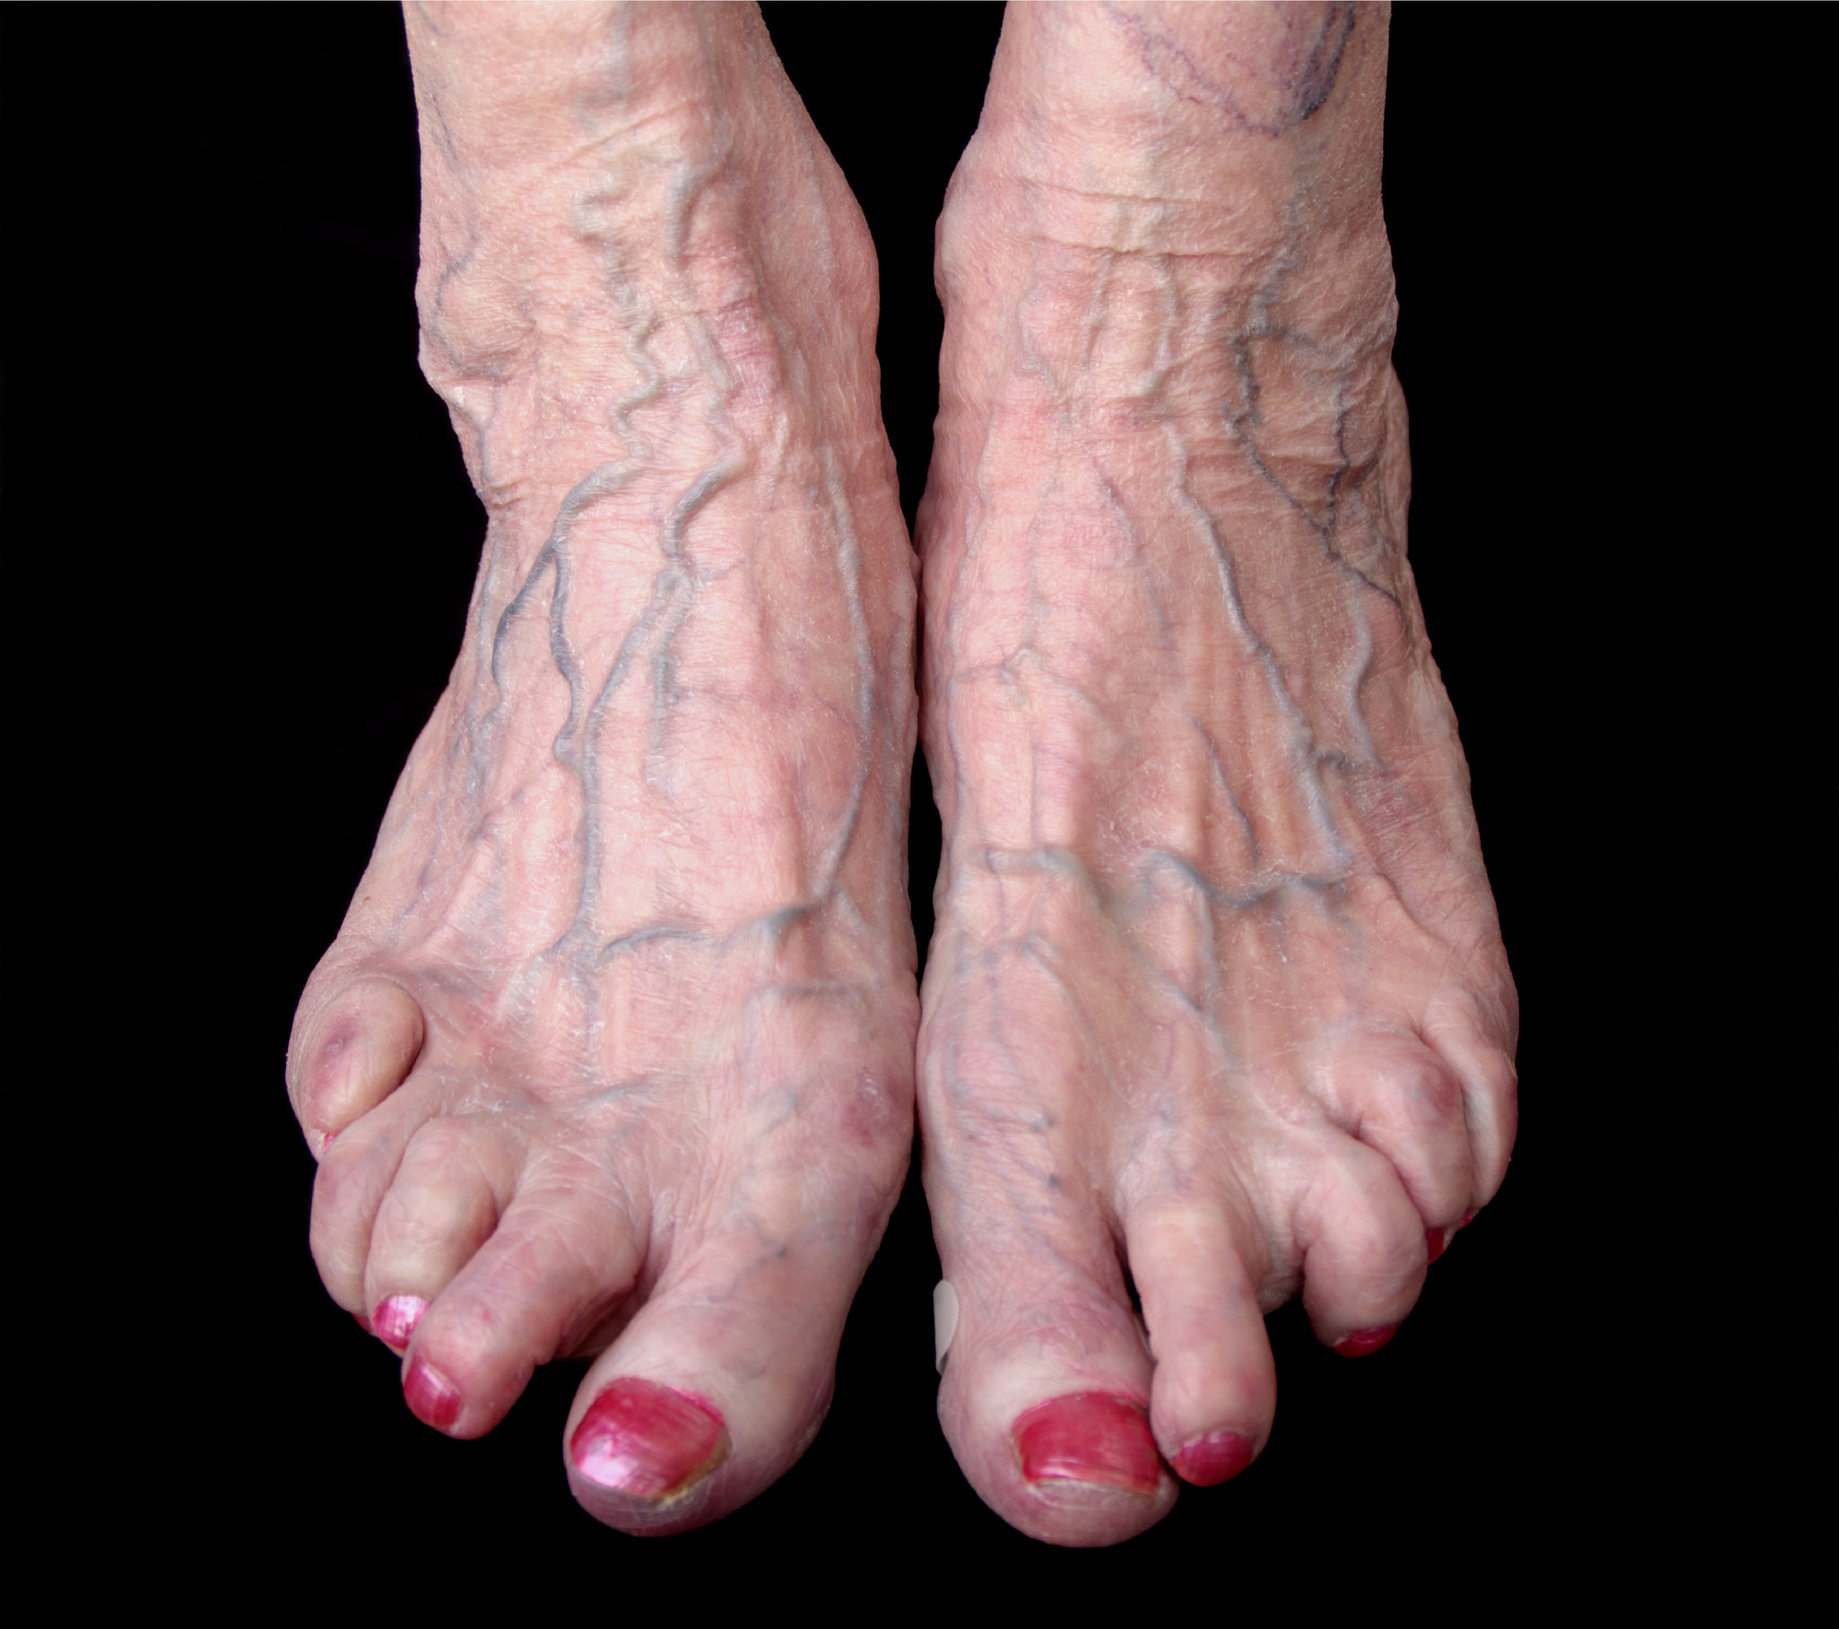 ízületi fájdalom a láb és a láb között fáj az ízület séta közben